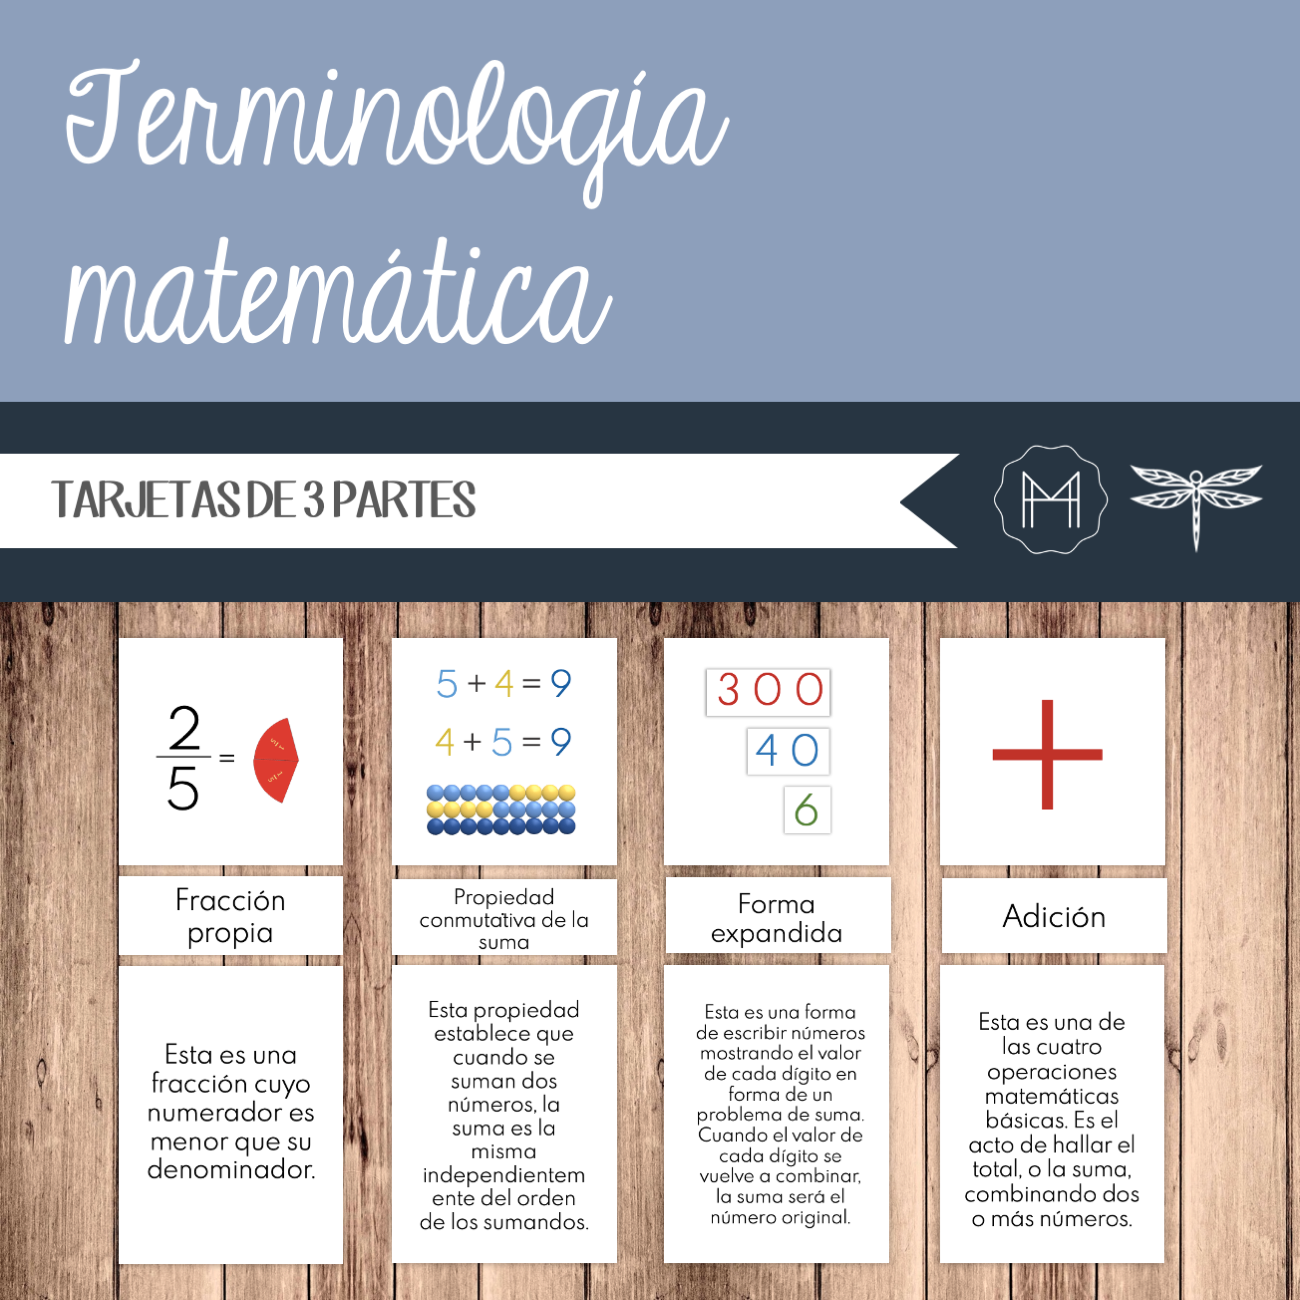 Terminología matemática – Tarjetas de 3 partes